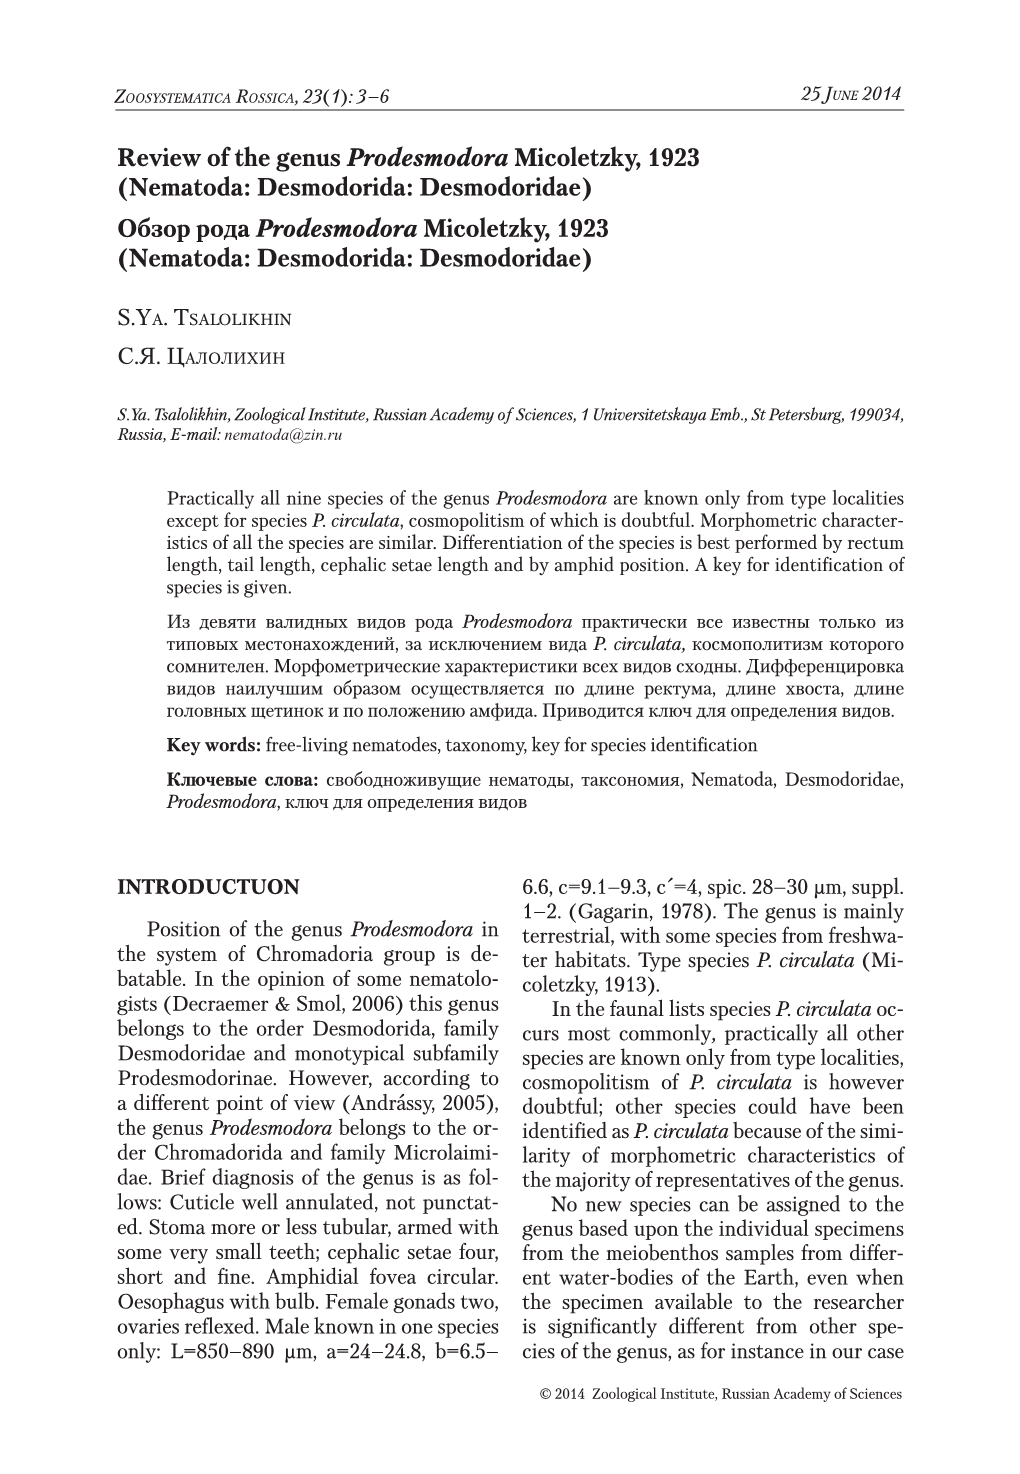 Review of the Genus Prodesmodora Micoletzky, 1923 (Nematoda: Desmodorida: Desmodoridae) Обзор Рода Prodesmodora Micoletzky, 1923 (Nematoda: Desmodorida: Desmodoridae)